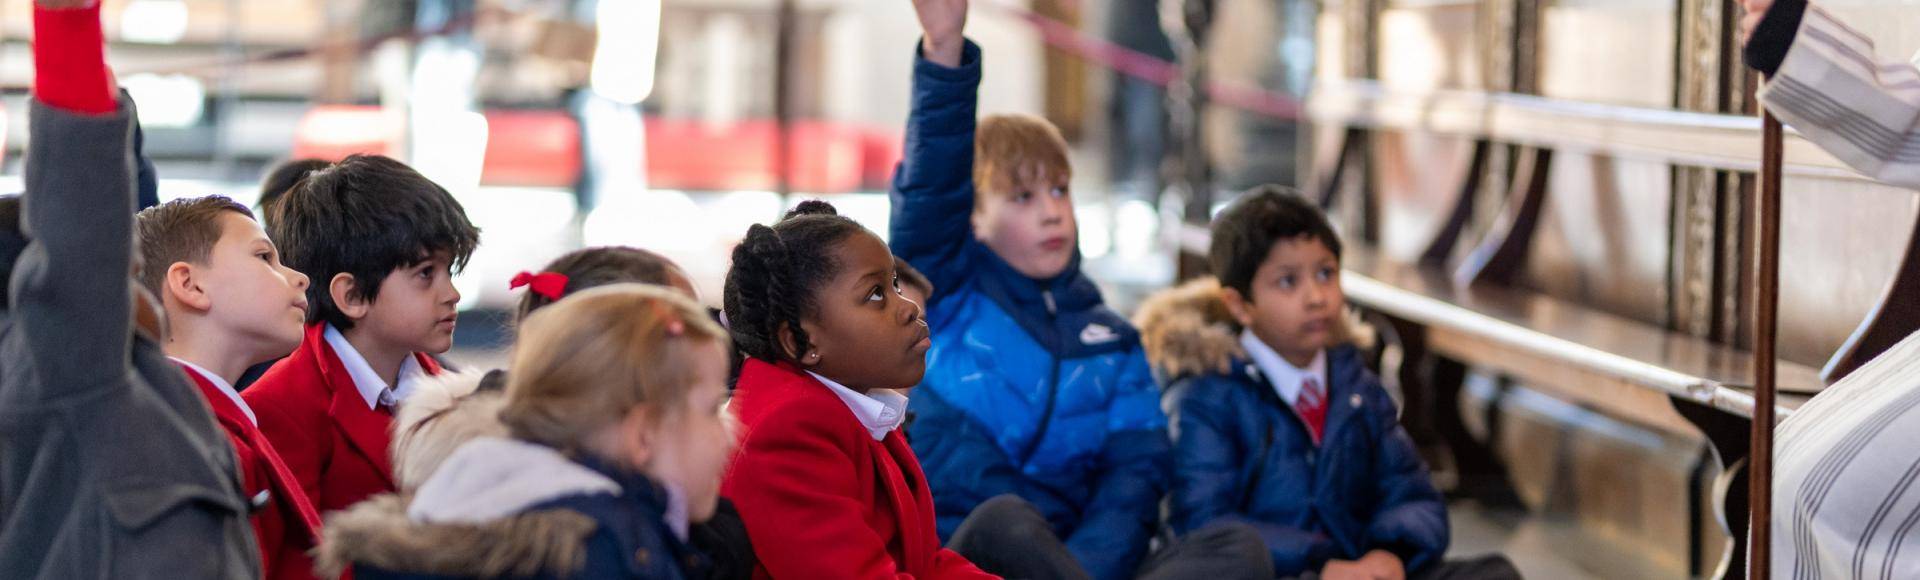 children school hands up engaged